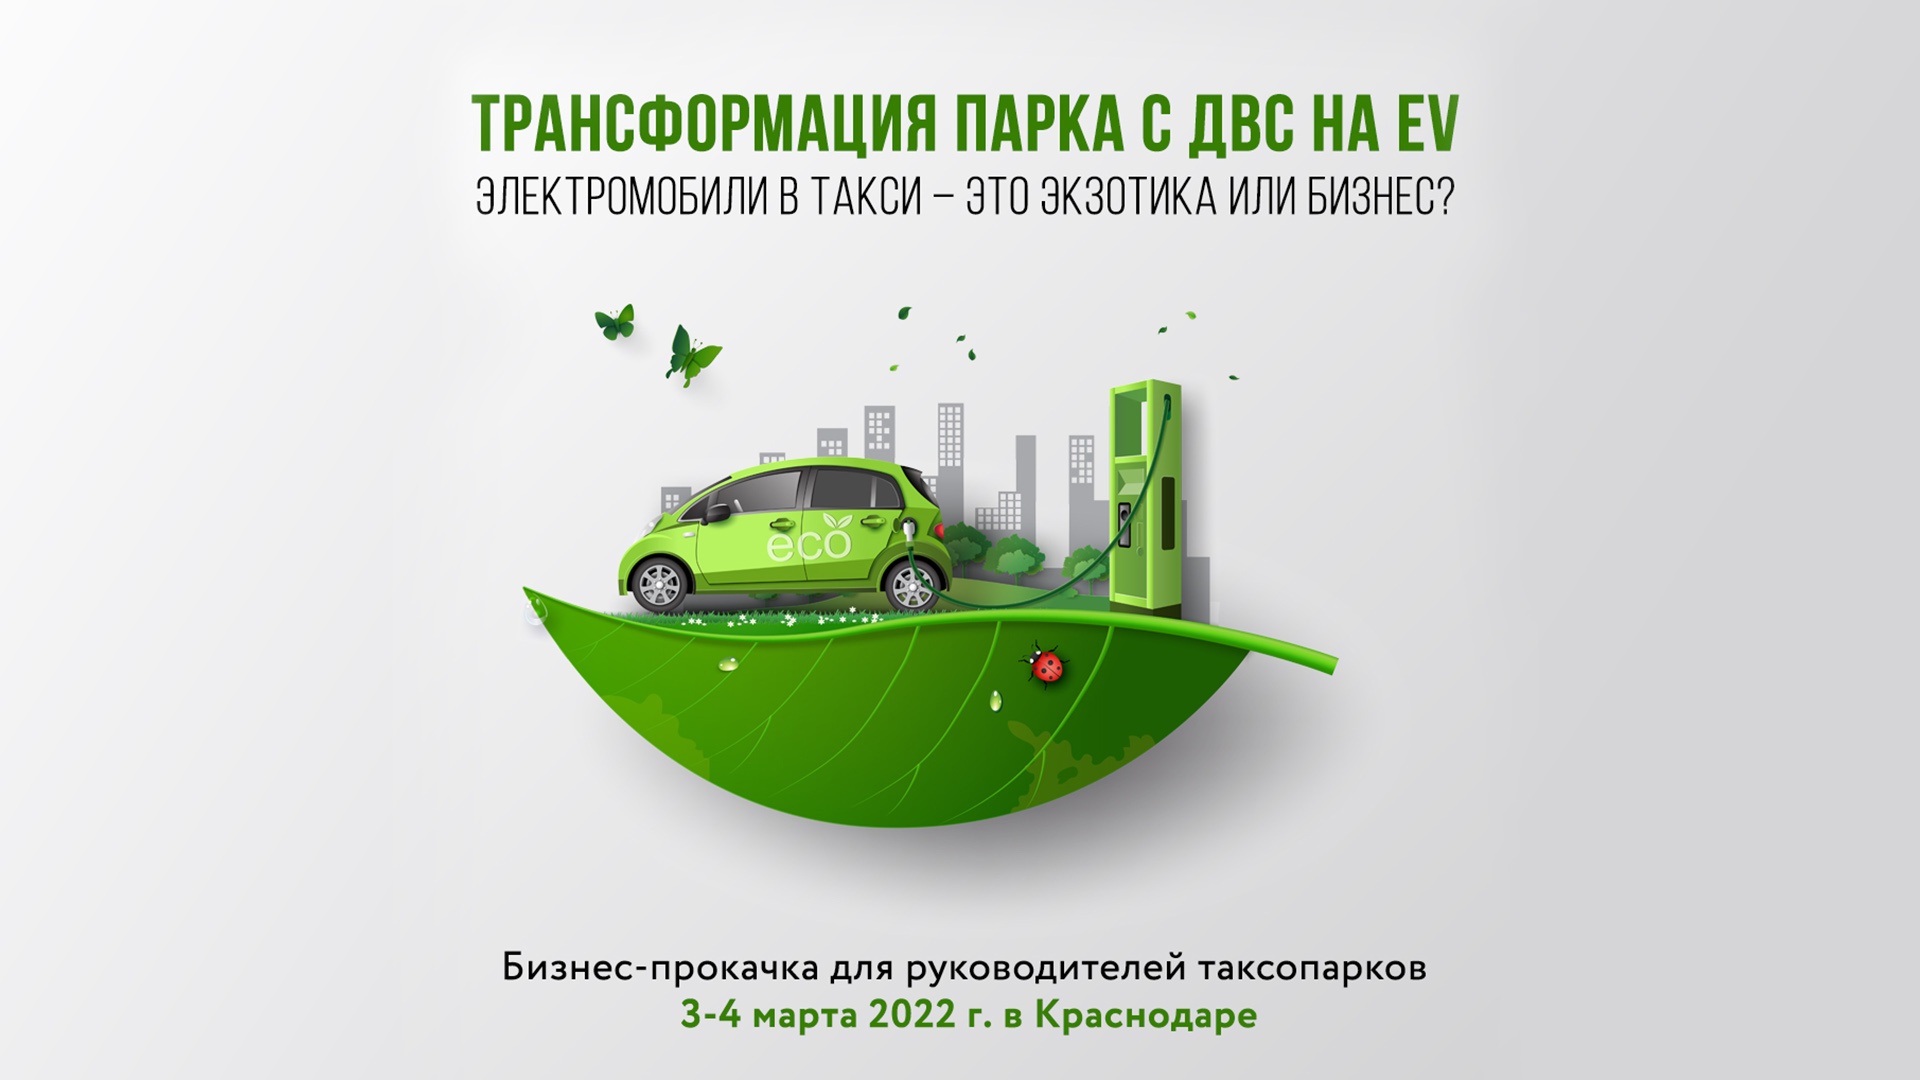 Билетов всё меньше, ответы всё ближе: Разбираемся в работе EV-таксопарка на примере коллег из Краснодара